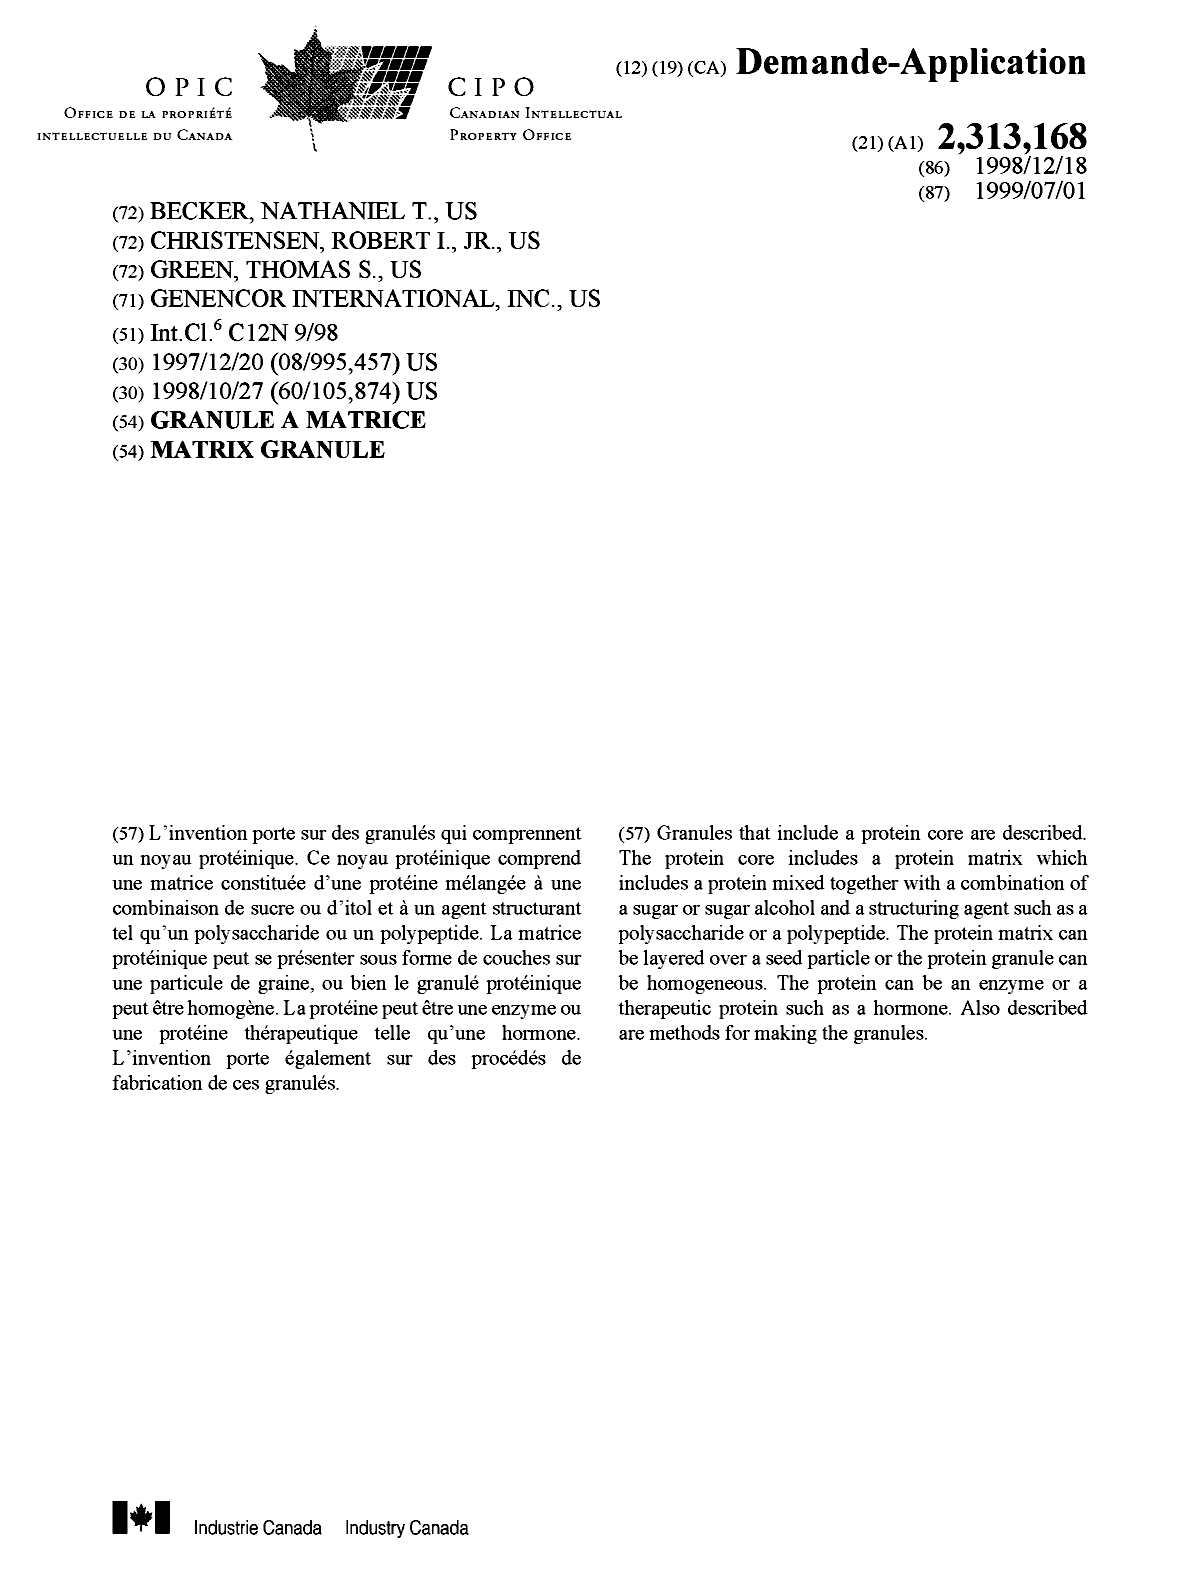 Document de brevet canadien 2313168. Page couverture 20000822. Image 1 de 1